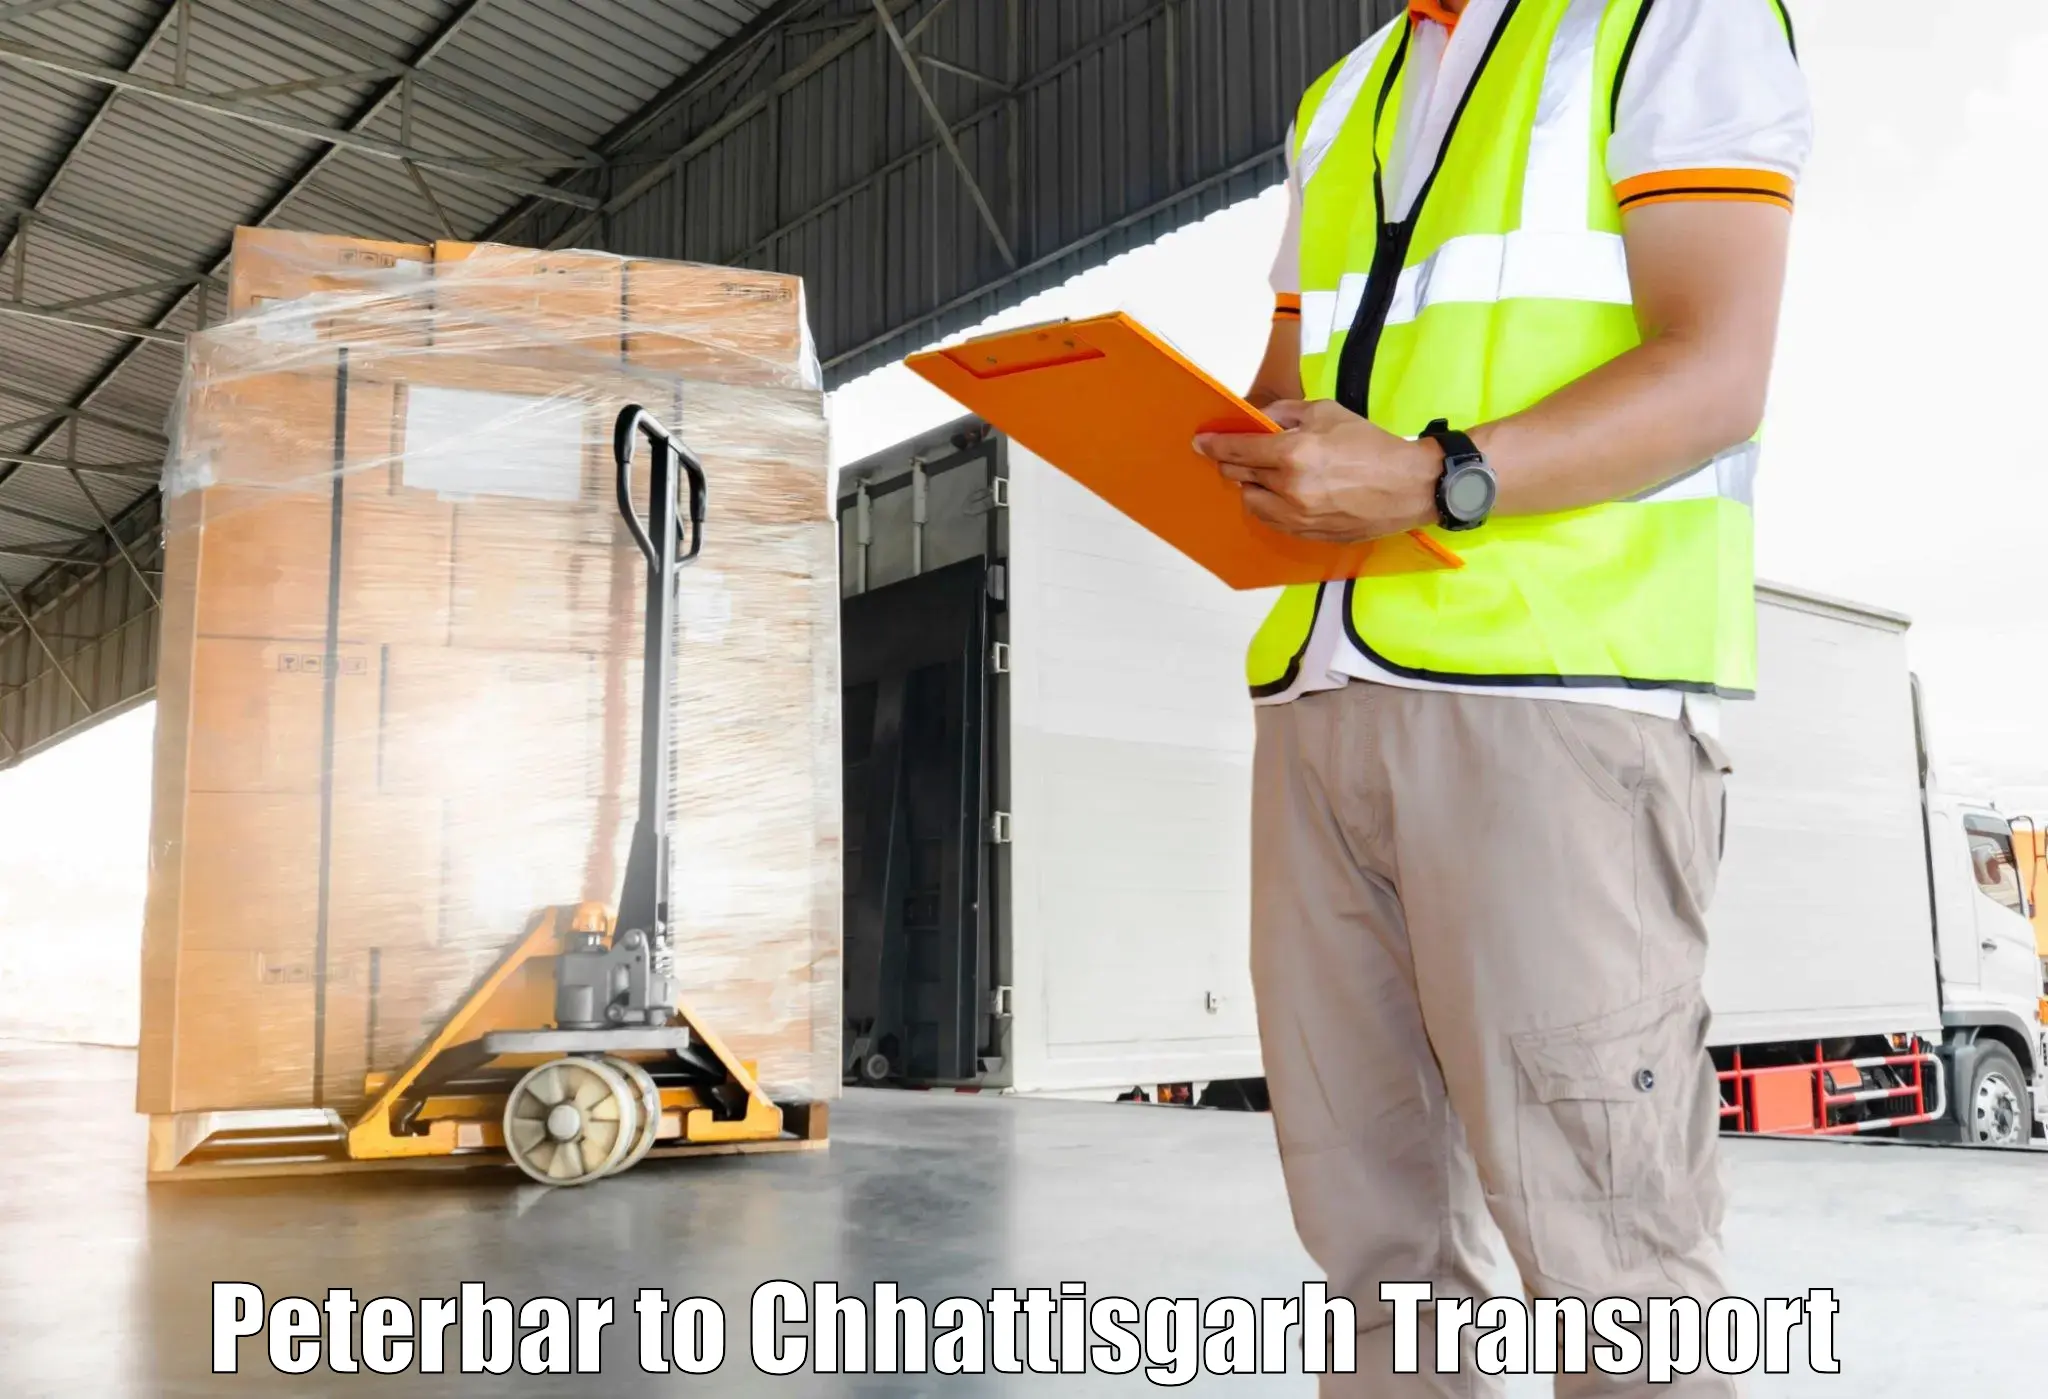 Container transport service Peterbar to Ramanujganj